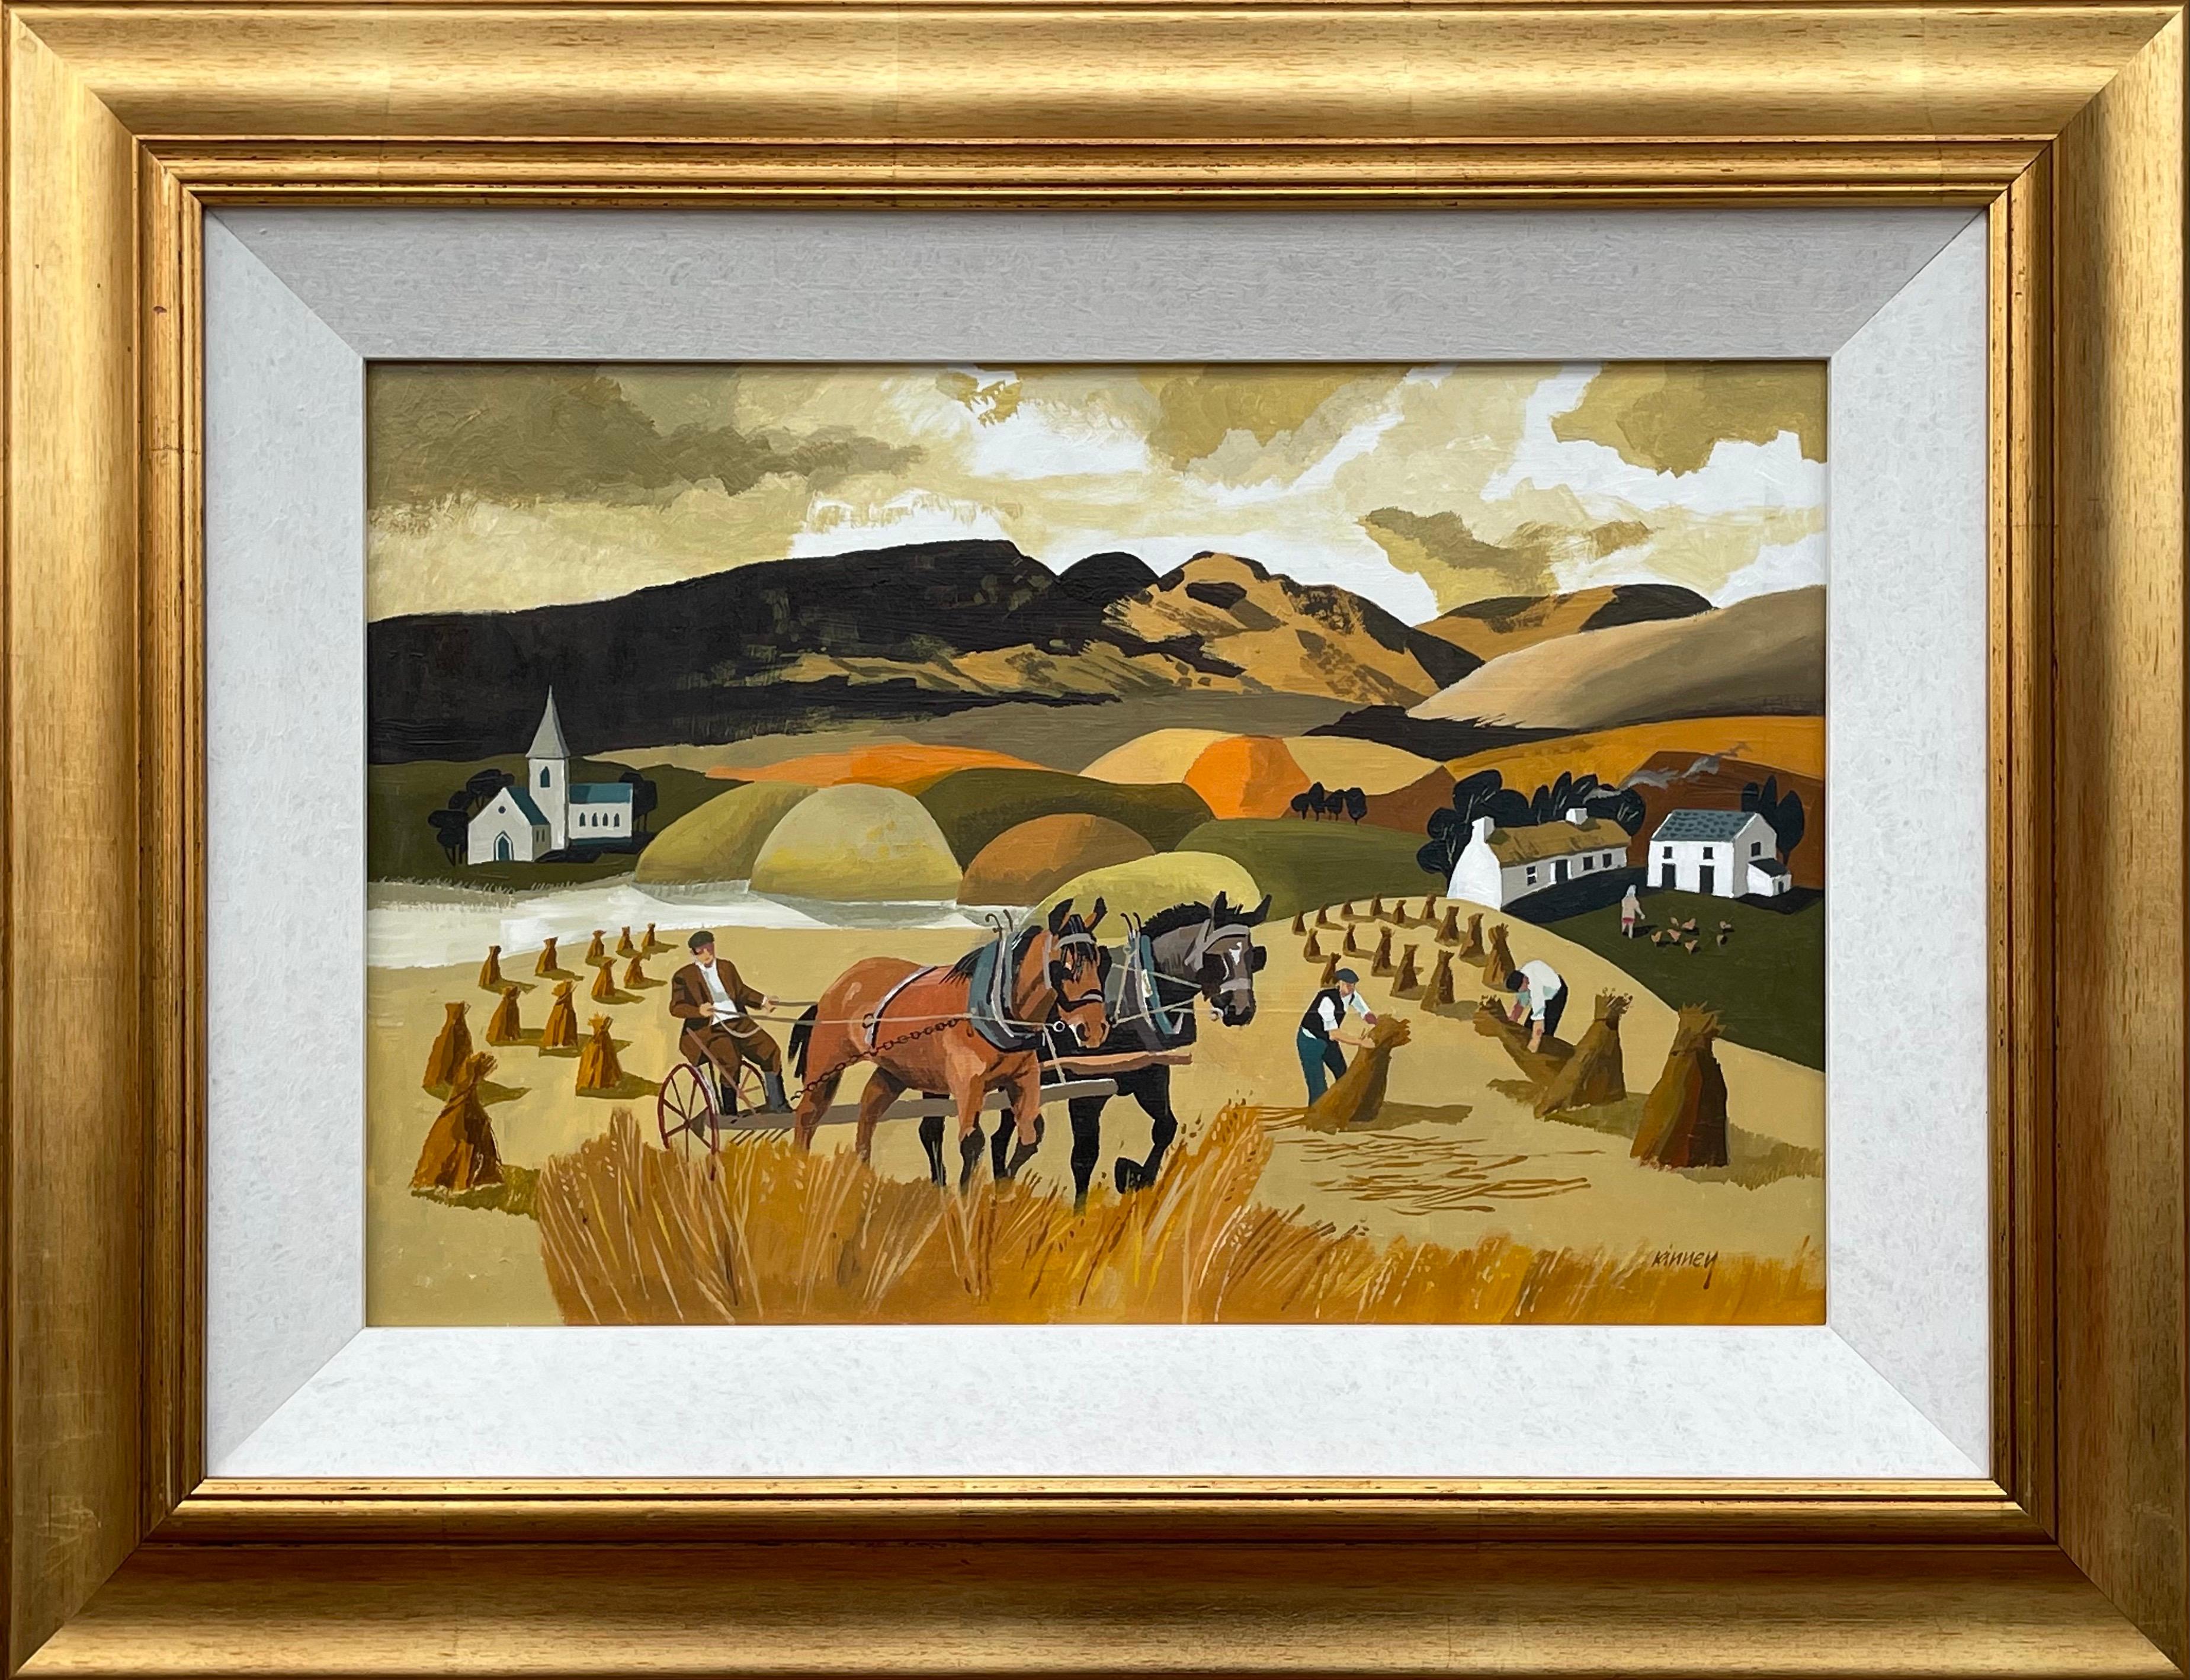 Abstrakte Landschaft mit Pferden in Cornfield in warmen Farben von moderner irischer Künstlerin